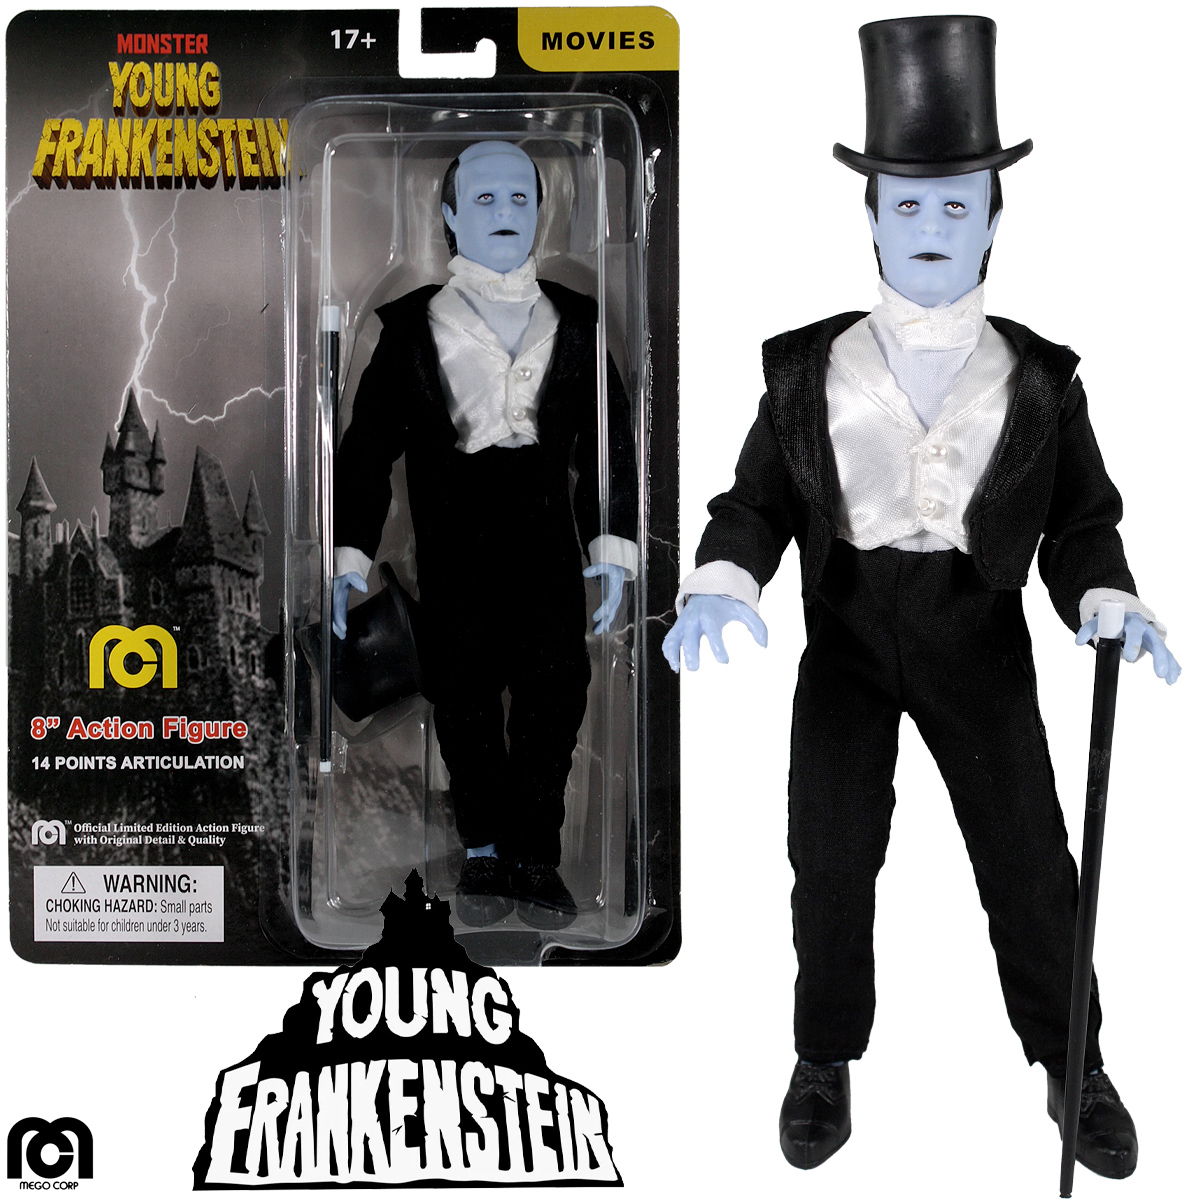 Monstro do Dr. Frederick Frankenstein (Peter Boyle) em O Jovem Frankenstein - Action Figure Mego